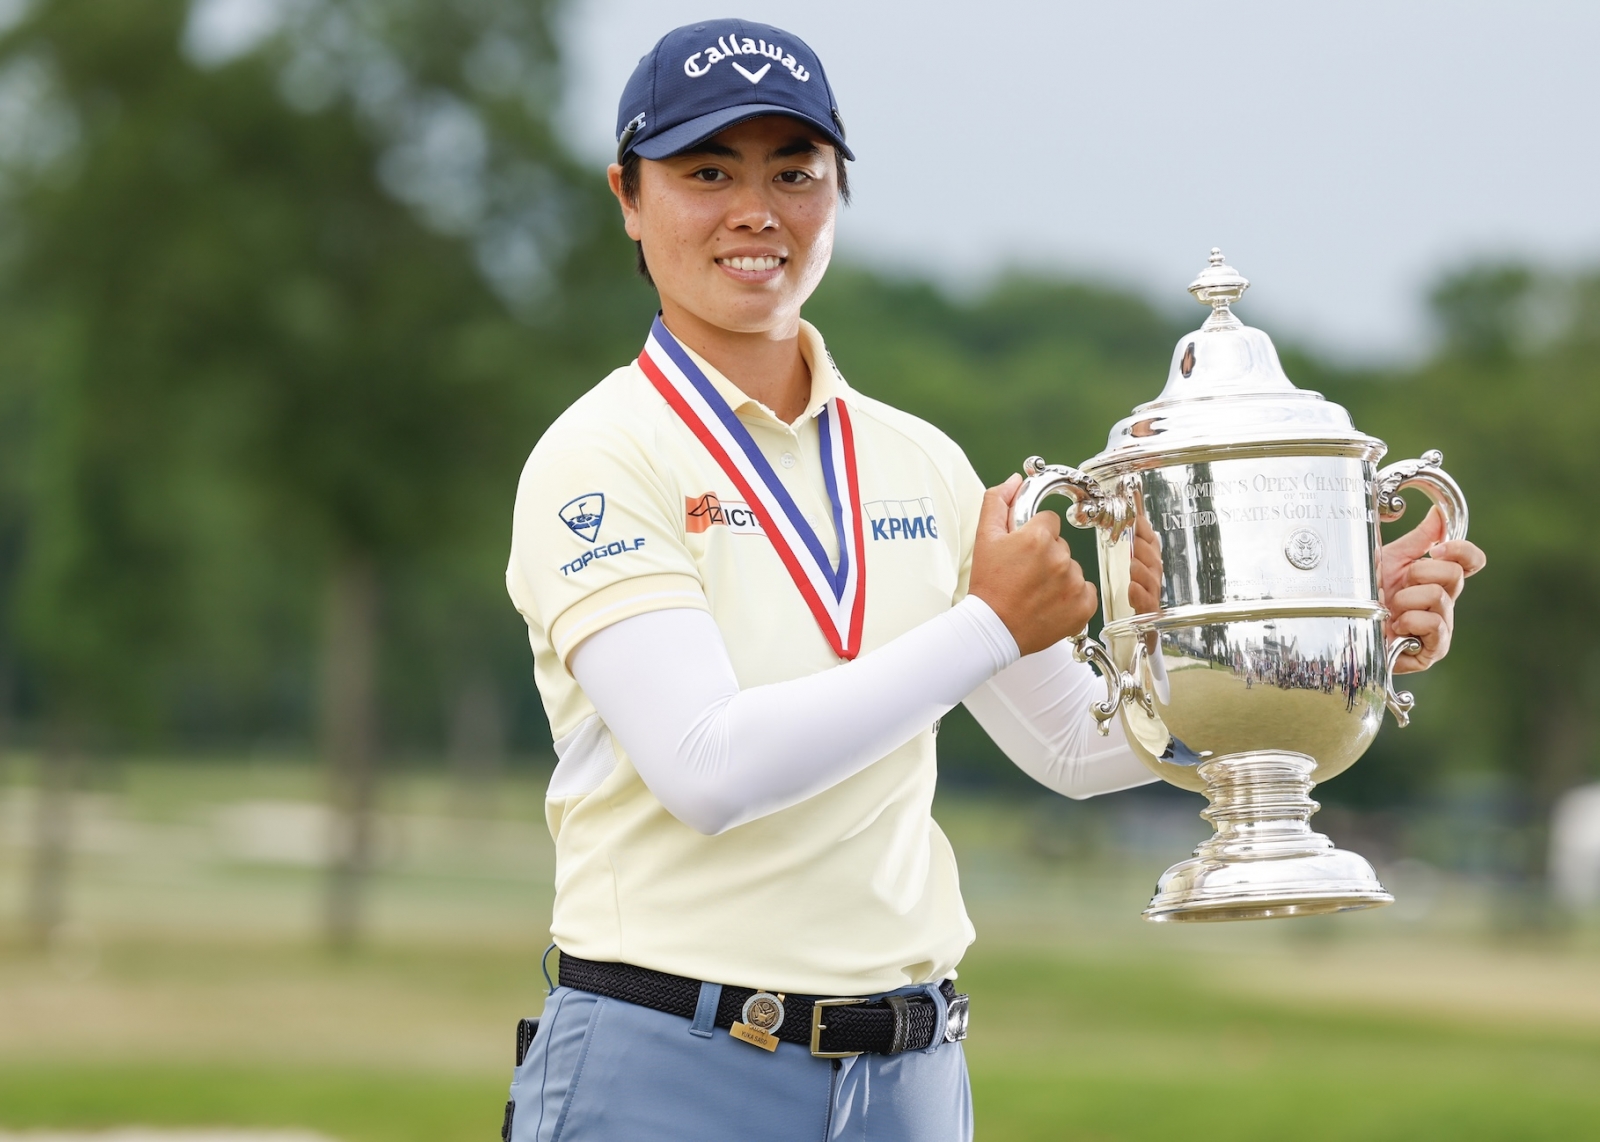 日本球員笹生優花(Yuka Saso)以276桿的總成績第二次摘下美國女子公開賽冠軍。照片由USGA提供